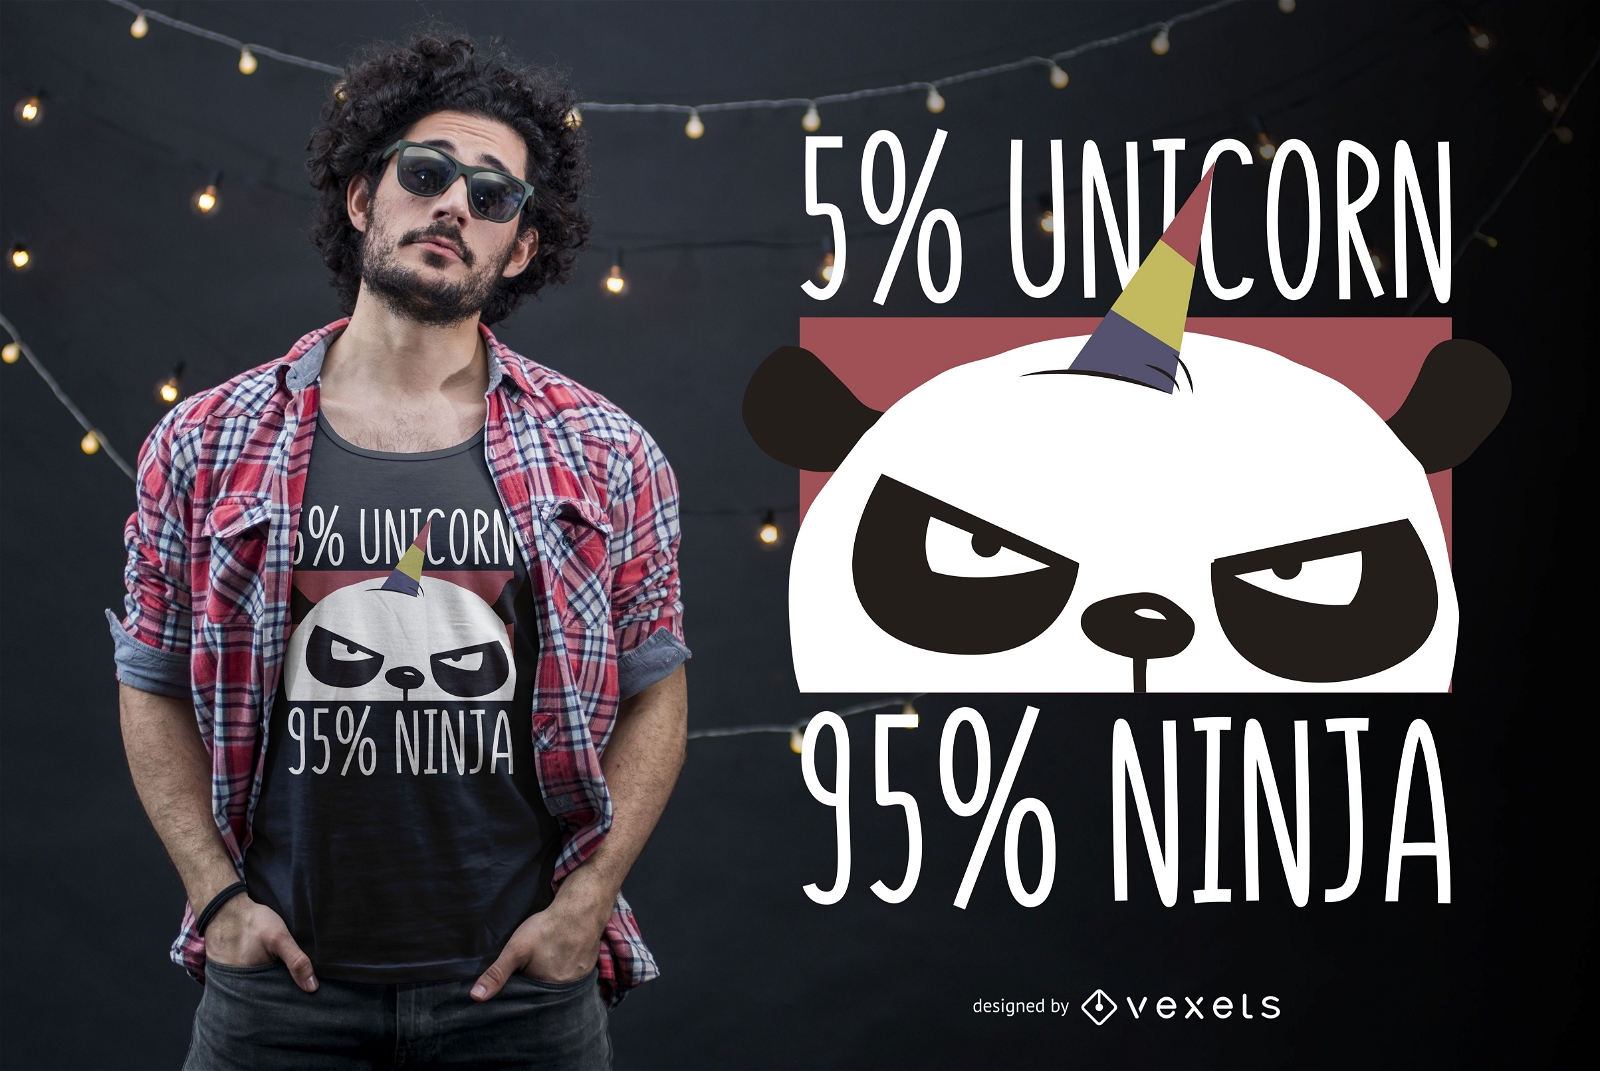 Unicorn ninja t-shirt design